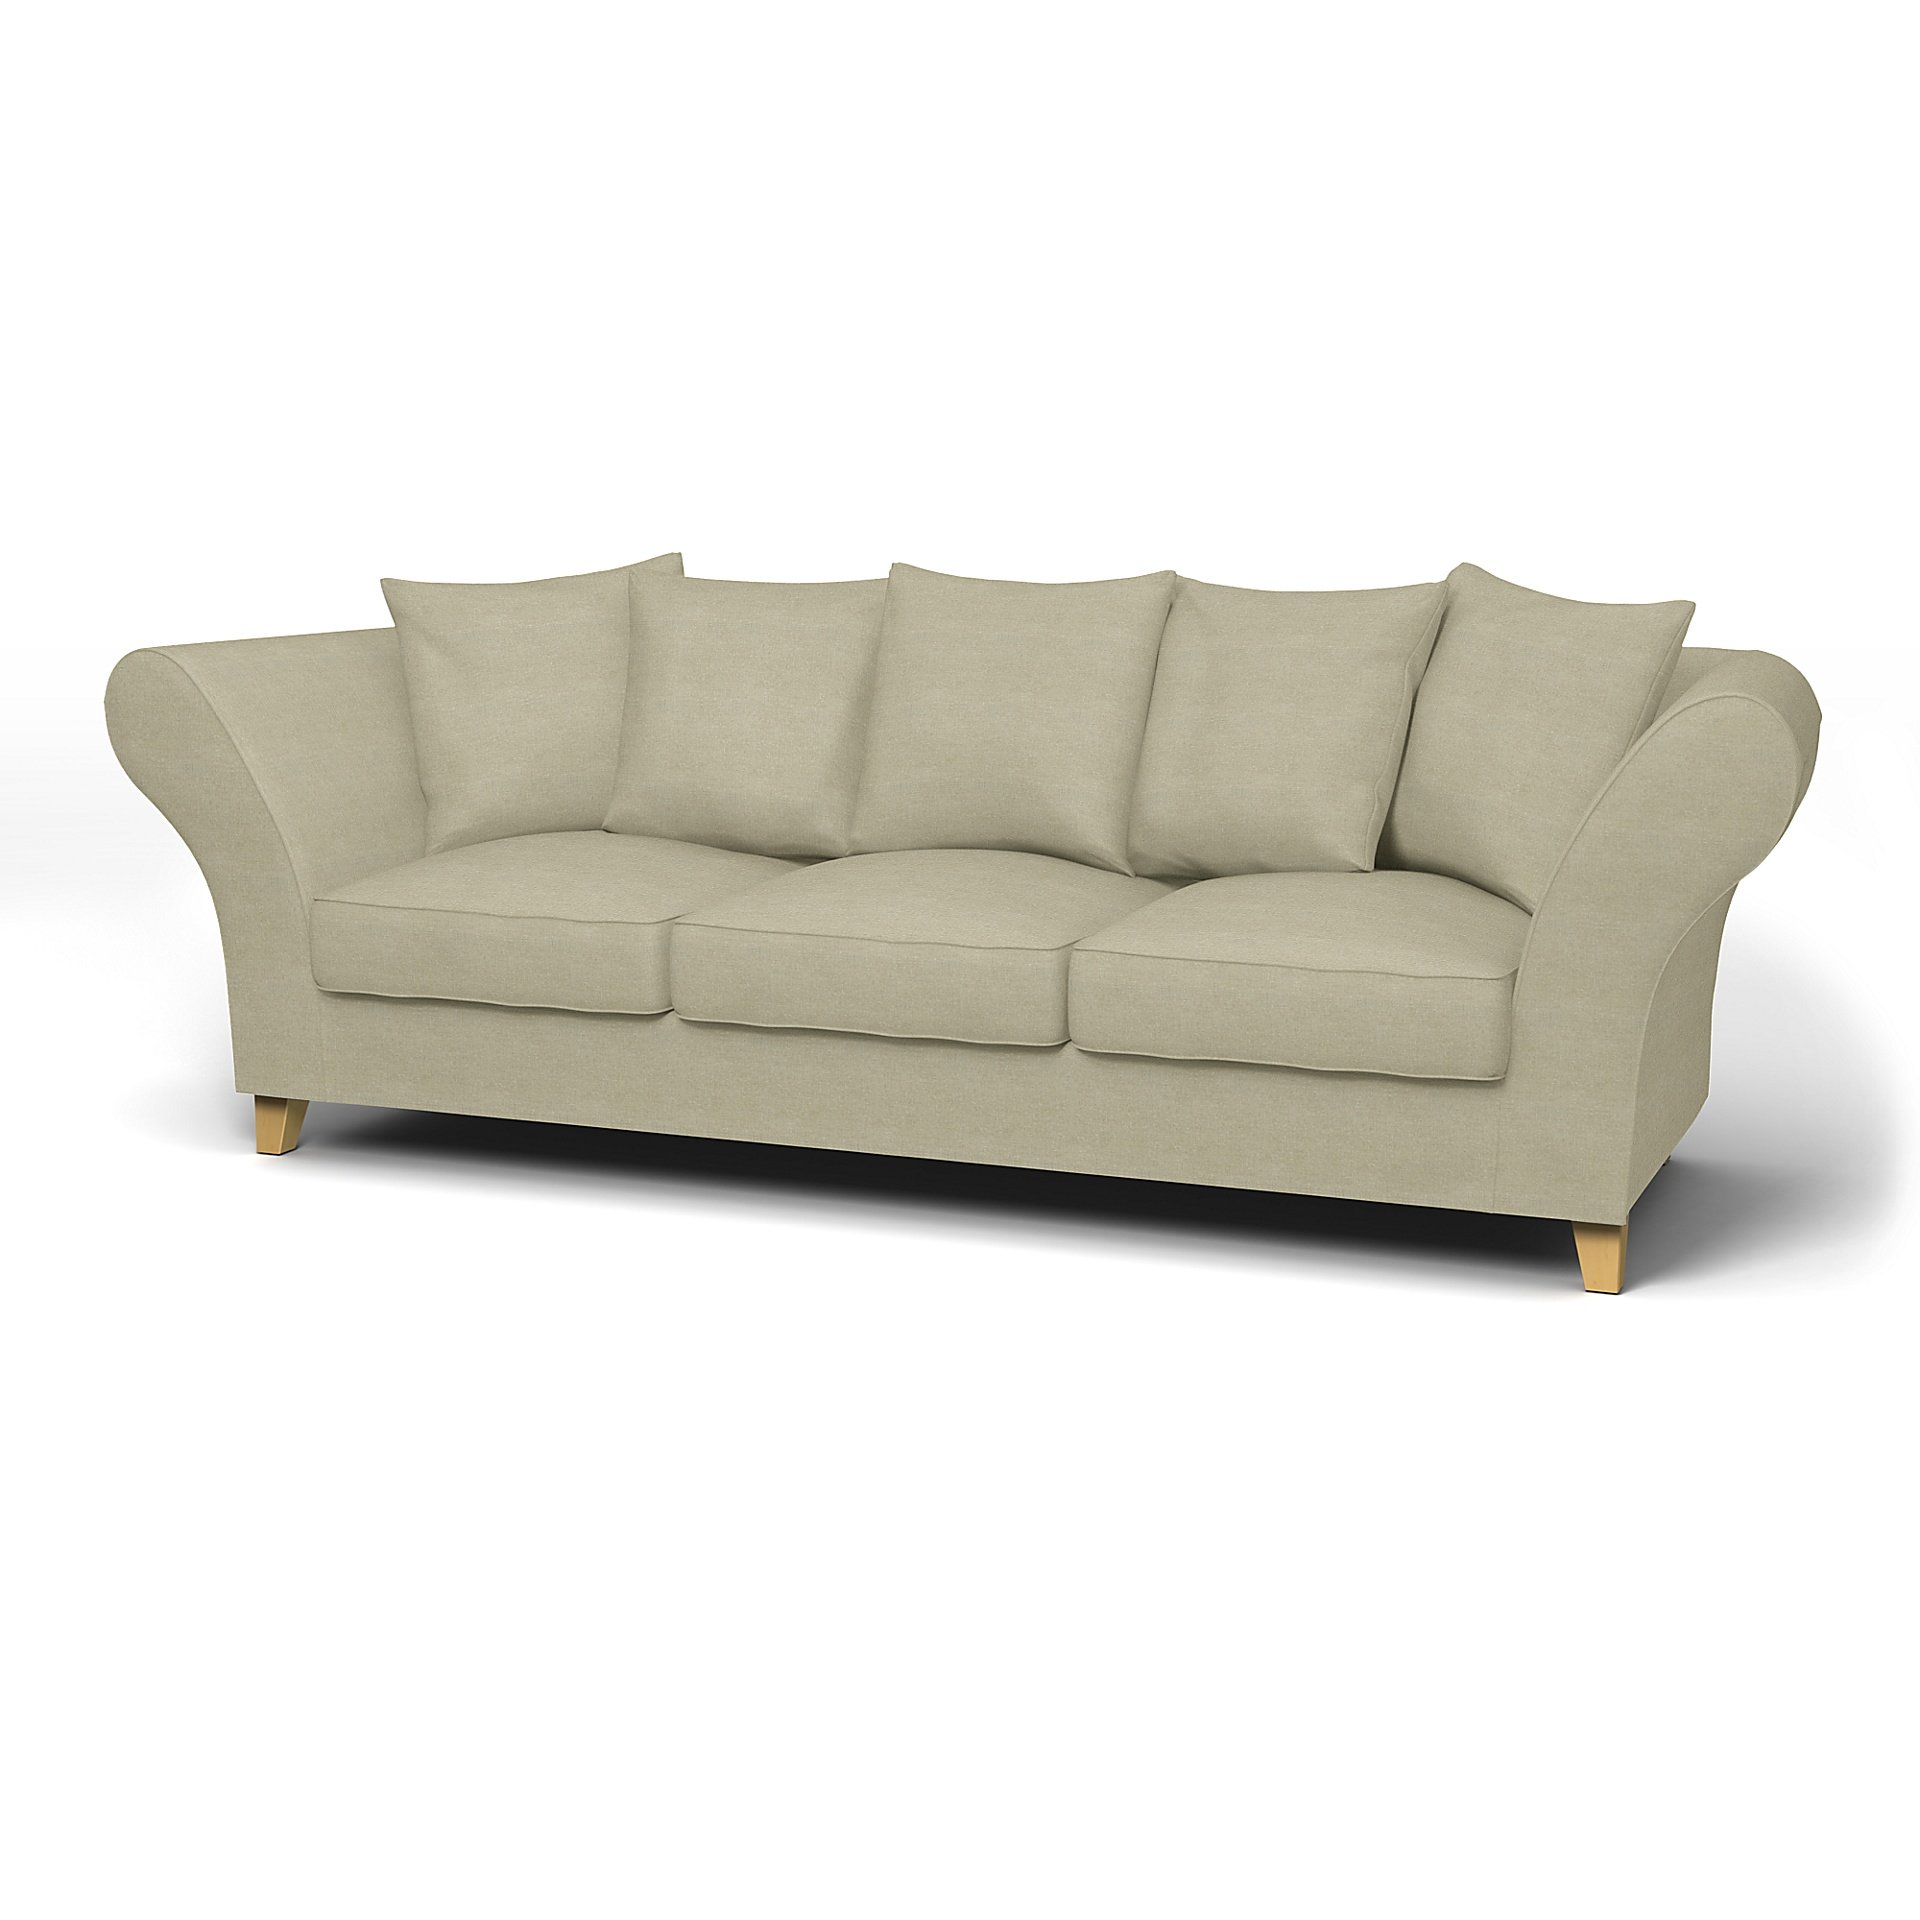 IKEA - Backa 3.5 Seater Sofa Cover, Pebble, Linen - Bemz